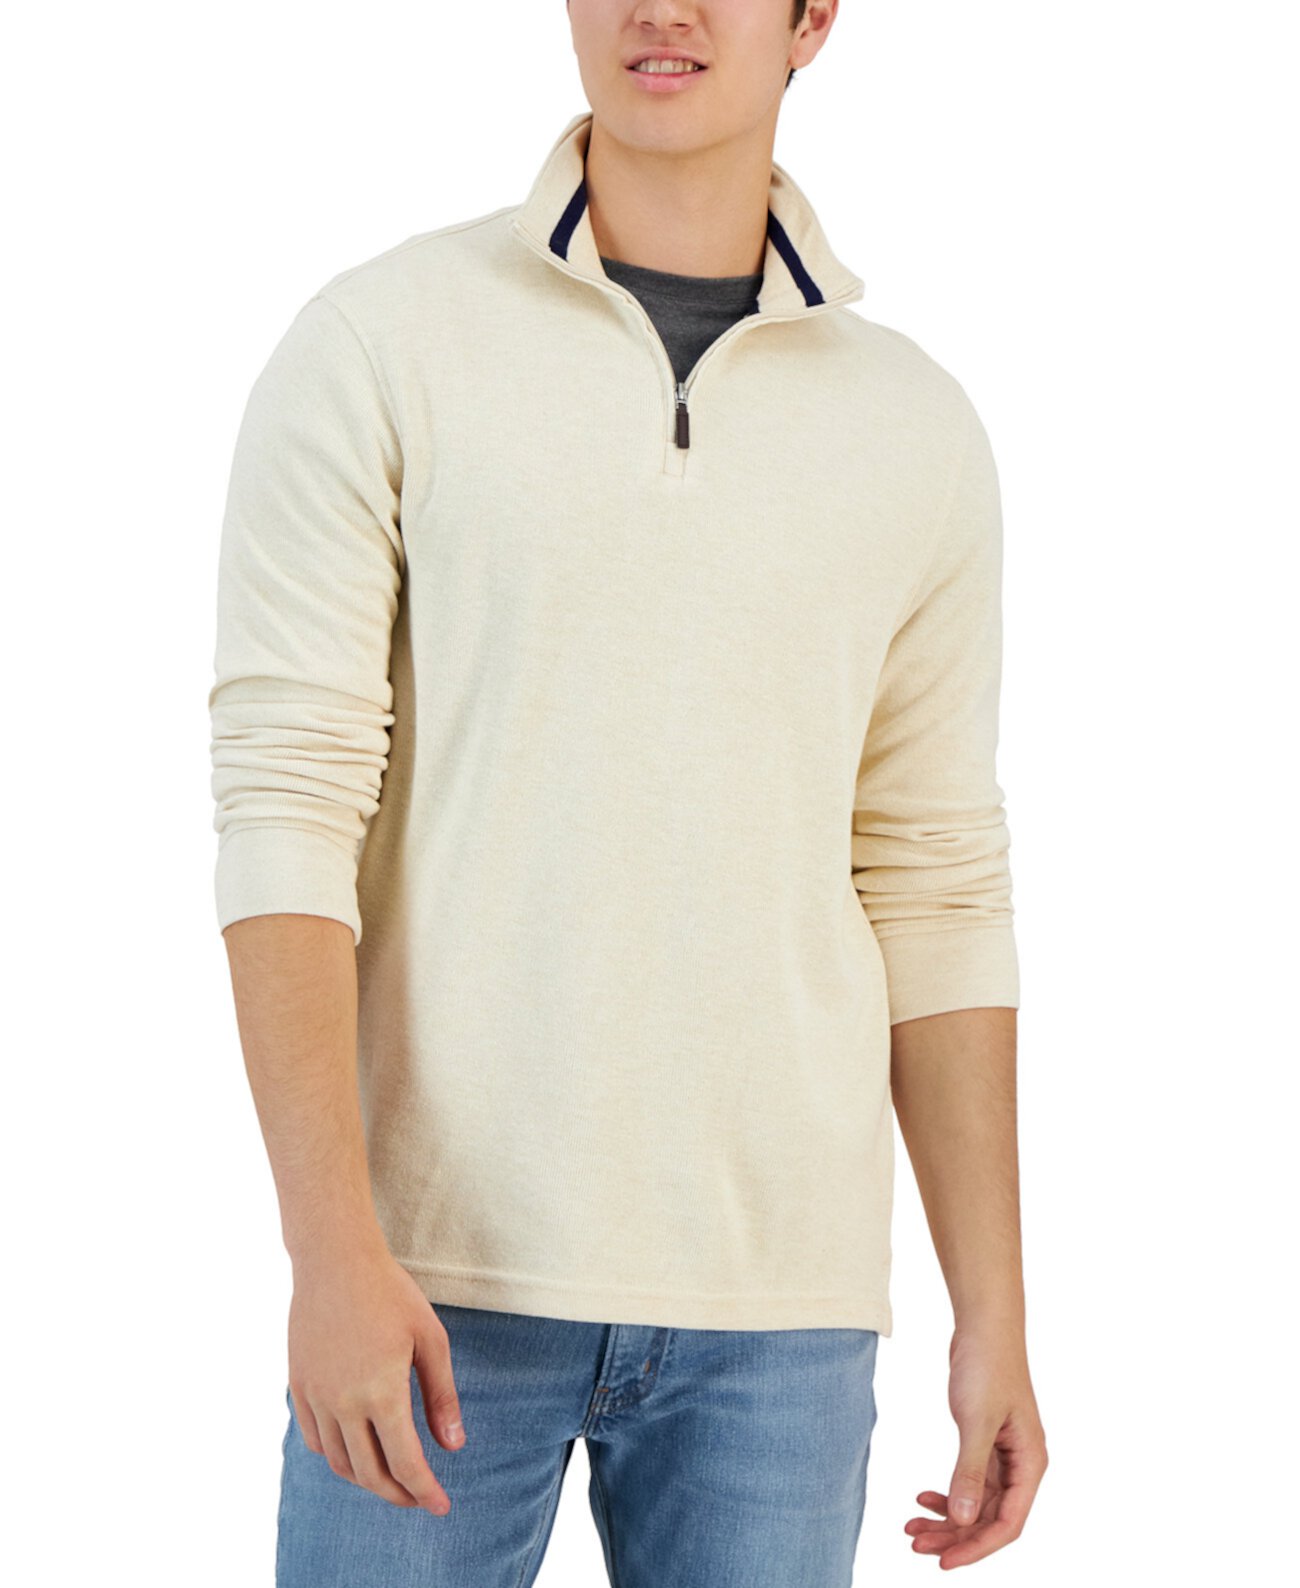 Мужской свитер из натурального меланжевого трикотажа с молнией на четверть, созданный для Macy's Club Room